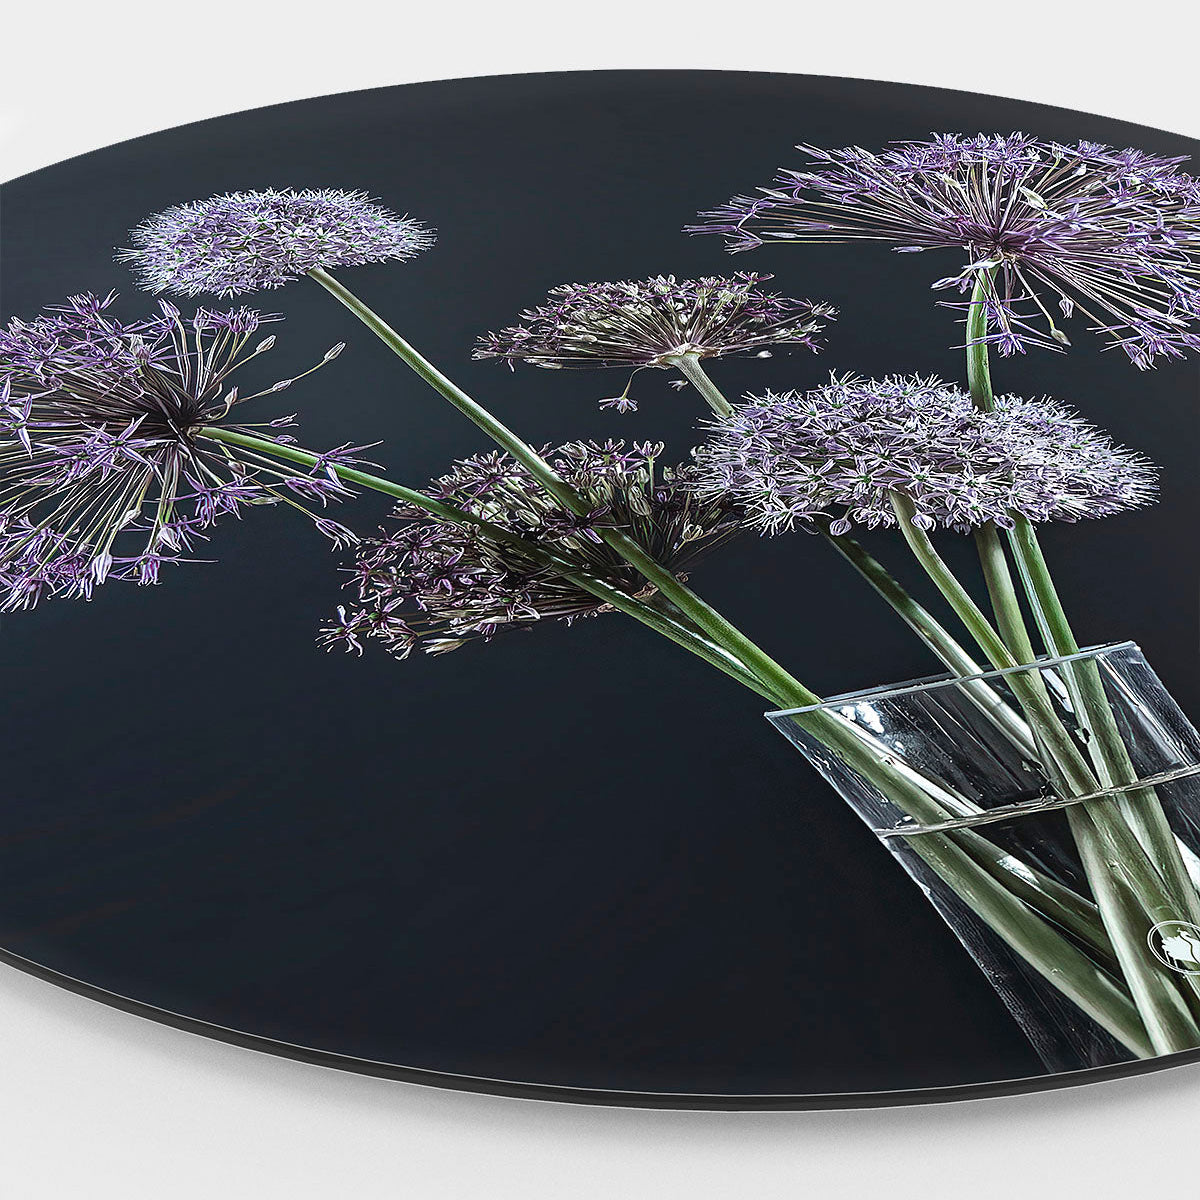 Wandcirkel met paarse bloemen en een zwarte achtergrond in vaas met water